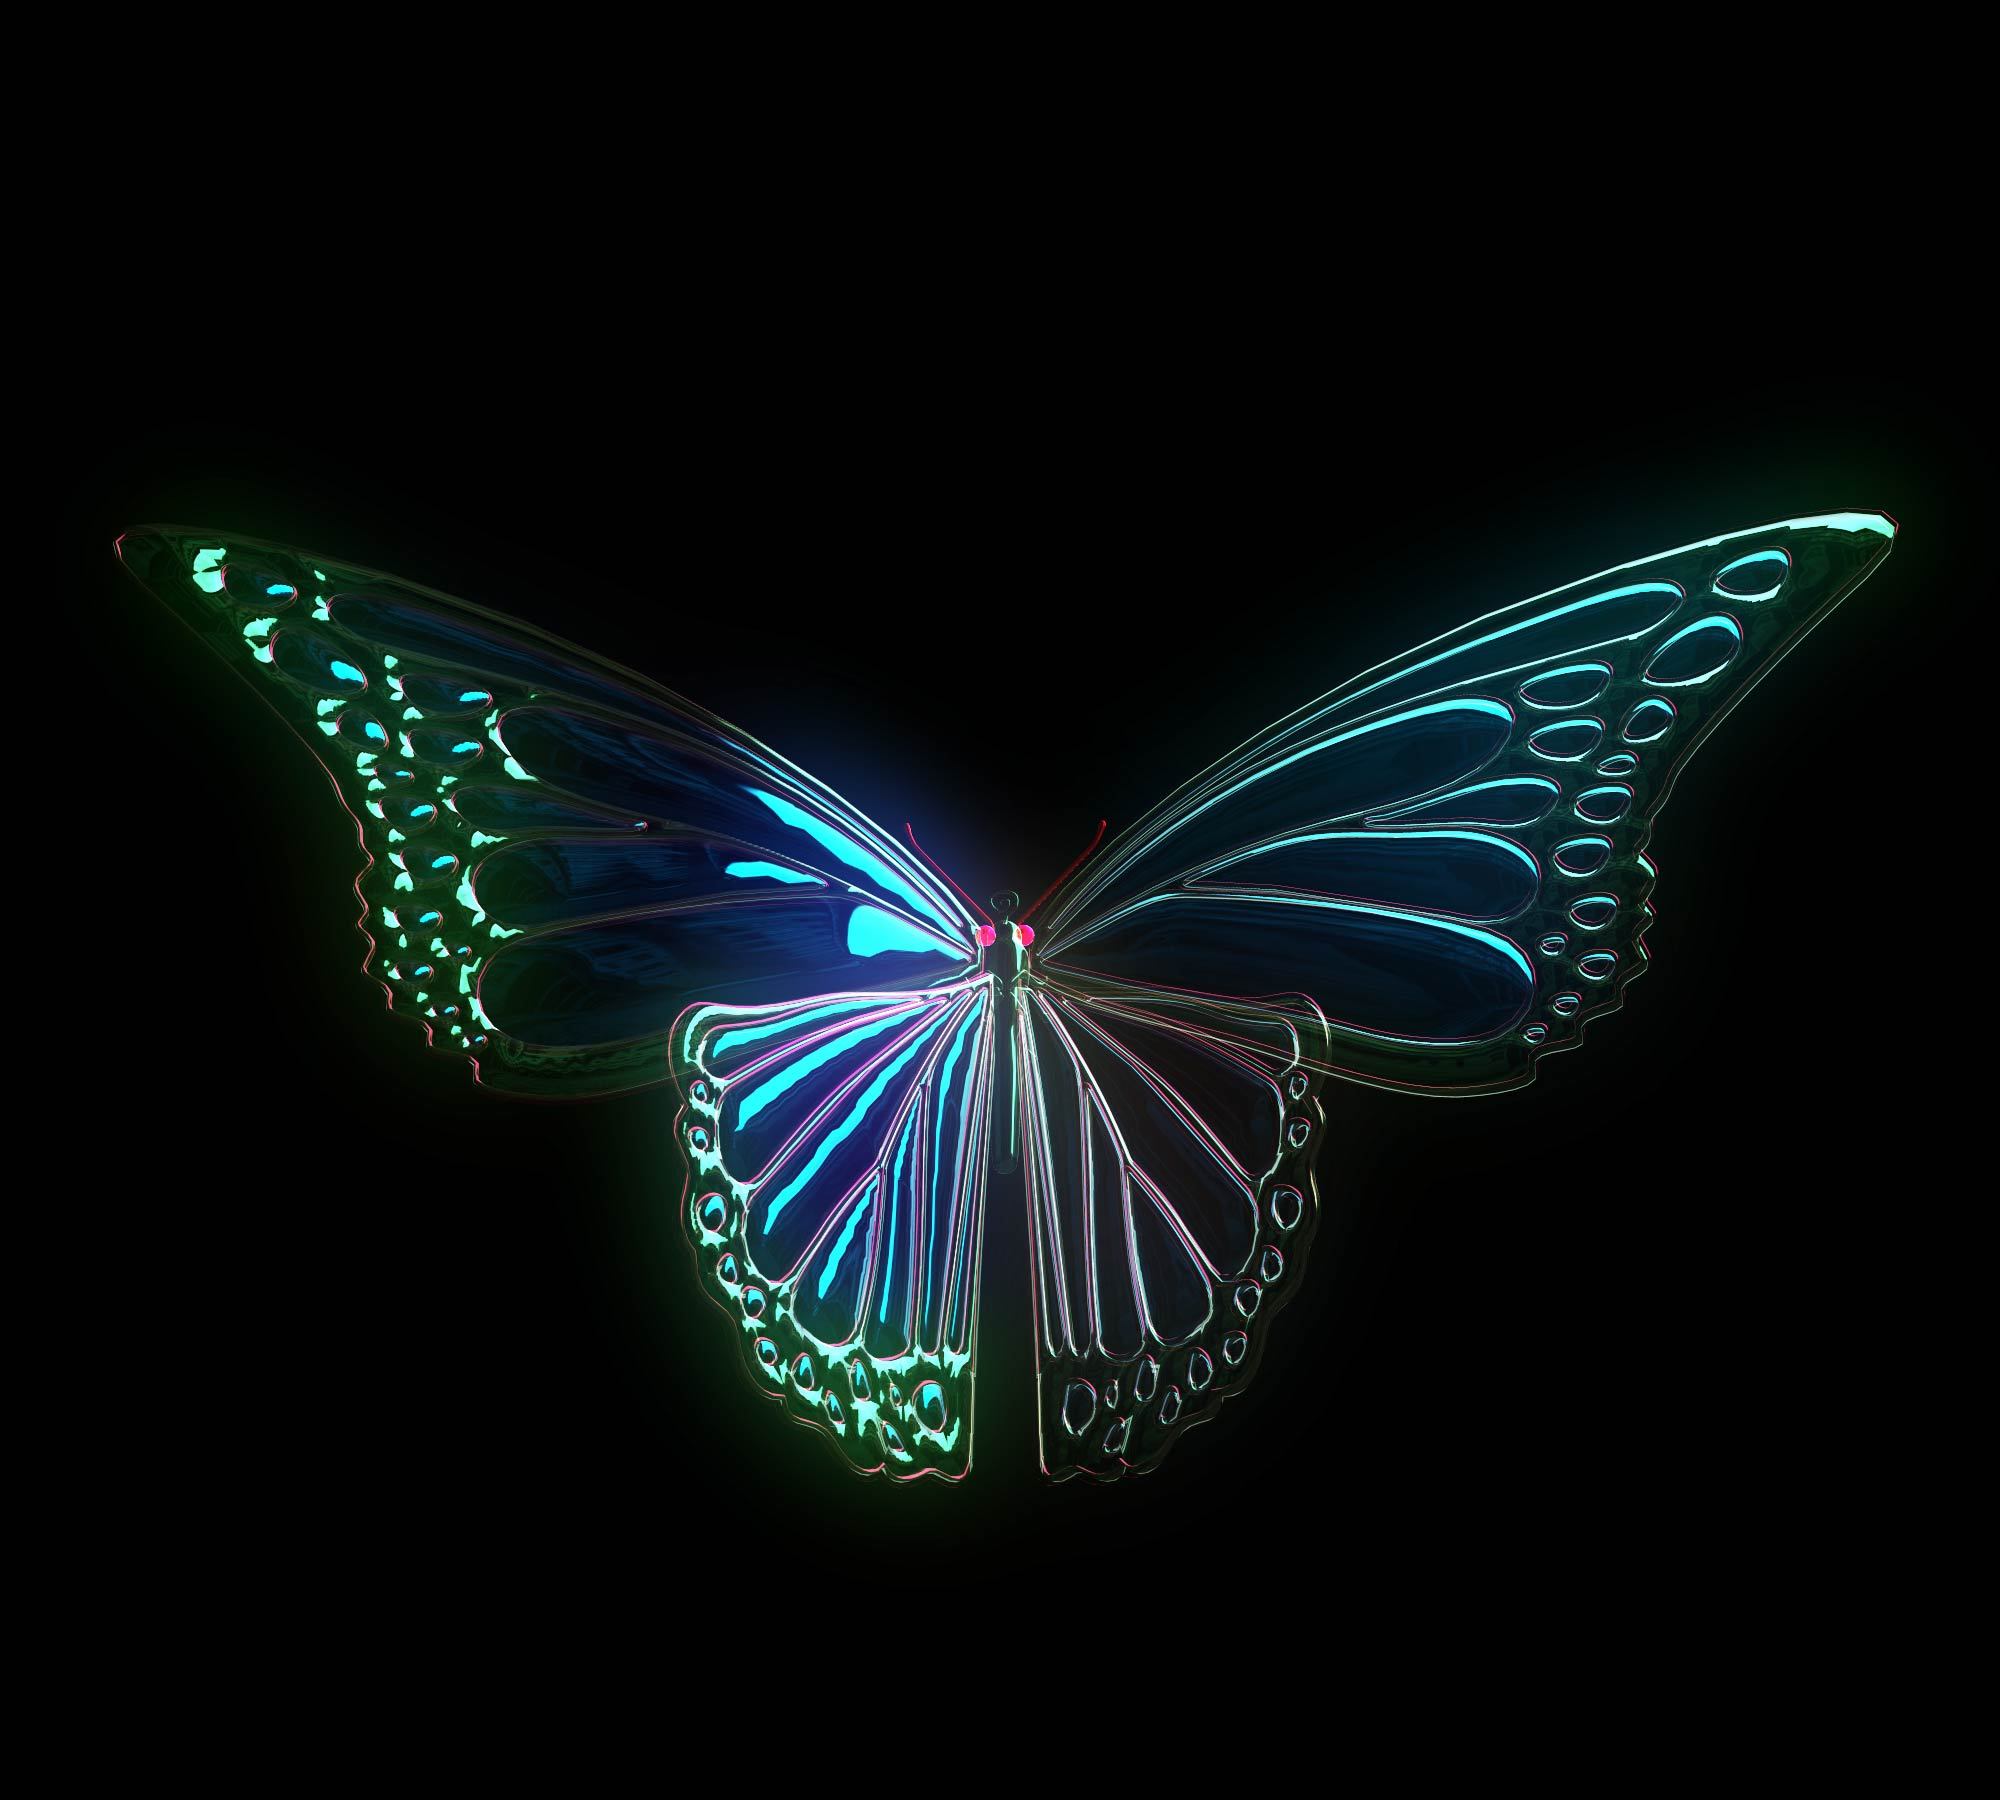 唯美绚丽迷人的蝴蝶光影图片手机壁纸 | 犀牛图片网